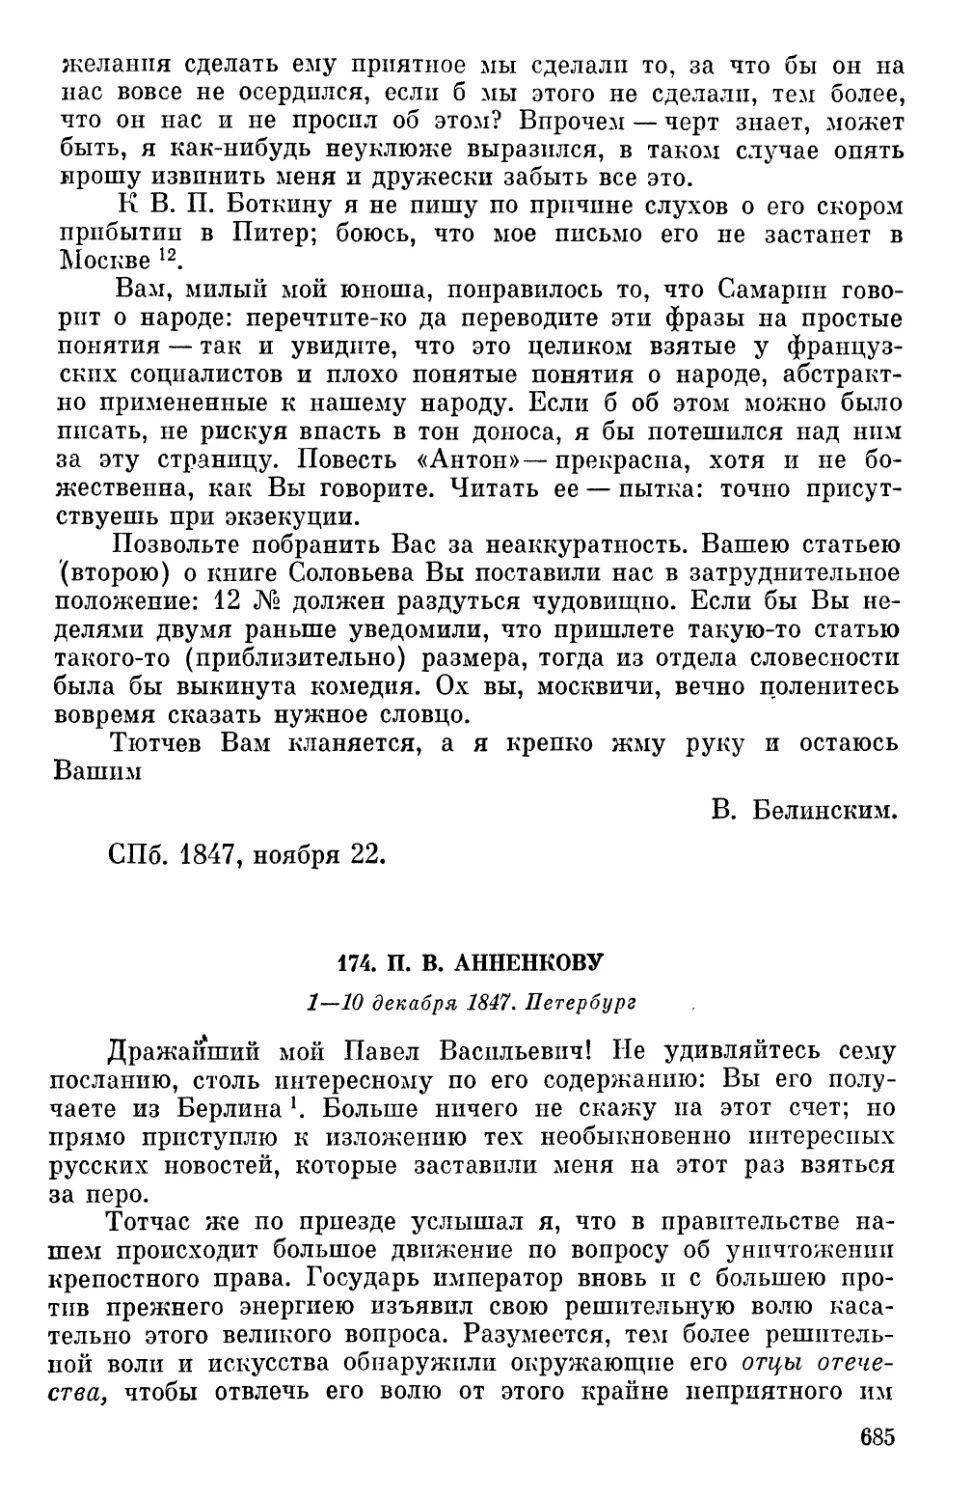 174. П. В. Анненкову. 1—10 декабря 1847